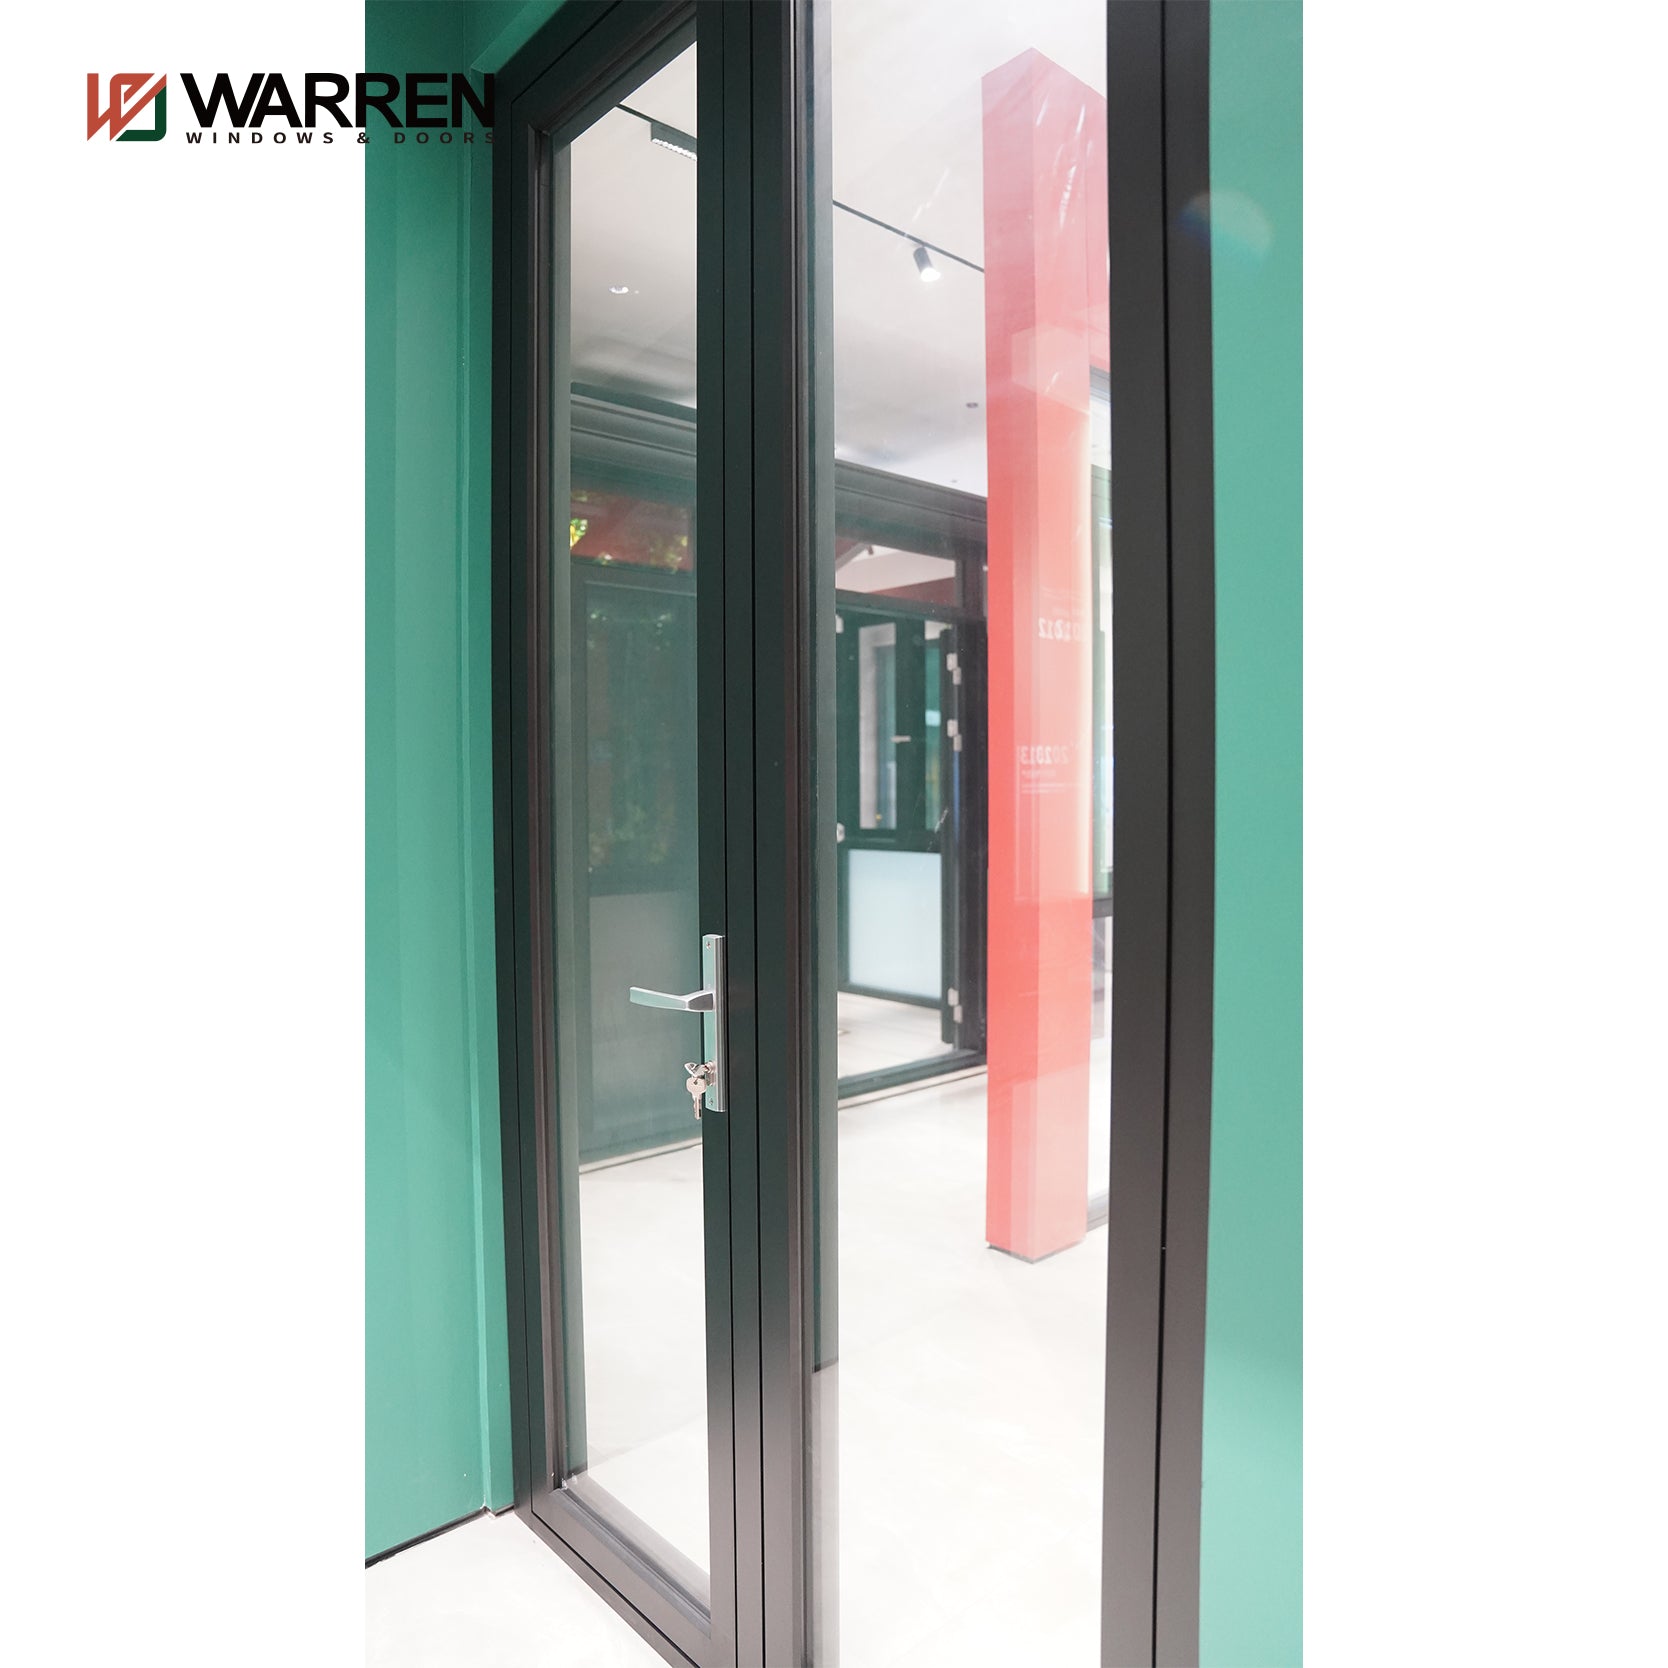 Warren High Quality Good Price Exterior French Patio Doors Interior Glass French Doors Aluminum Double Casement Door